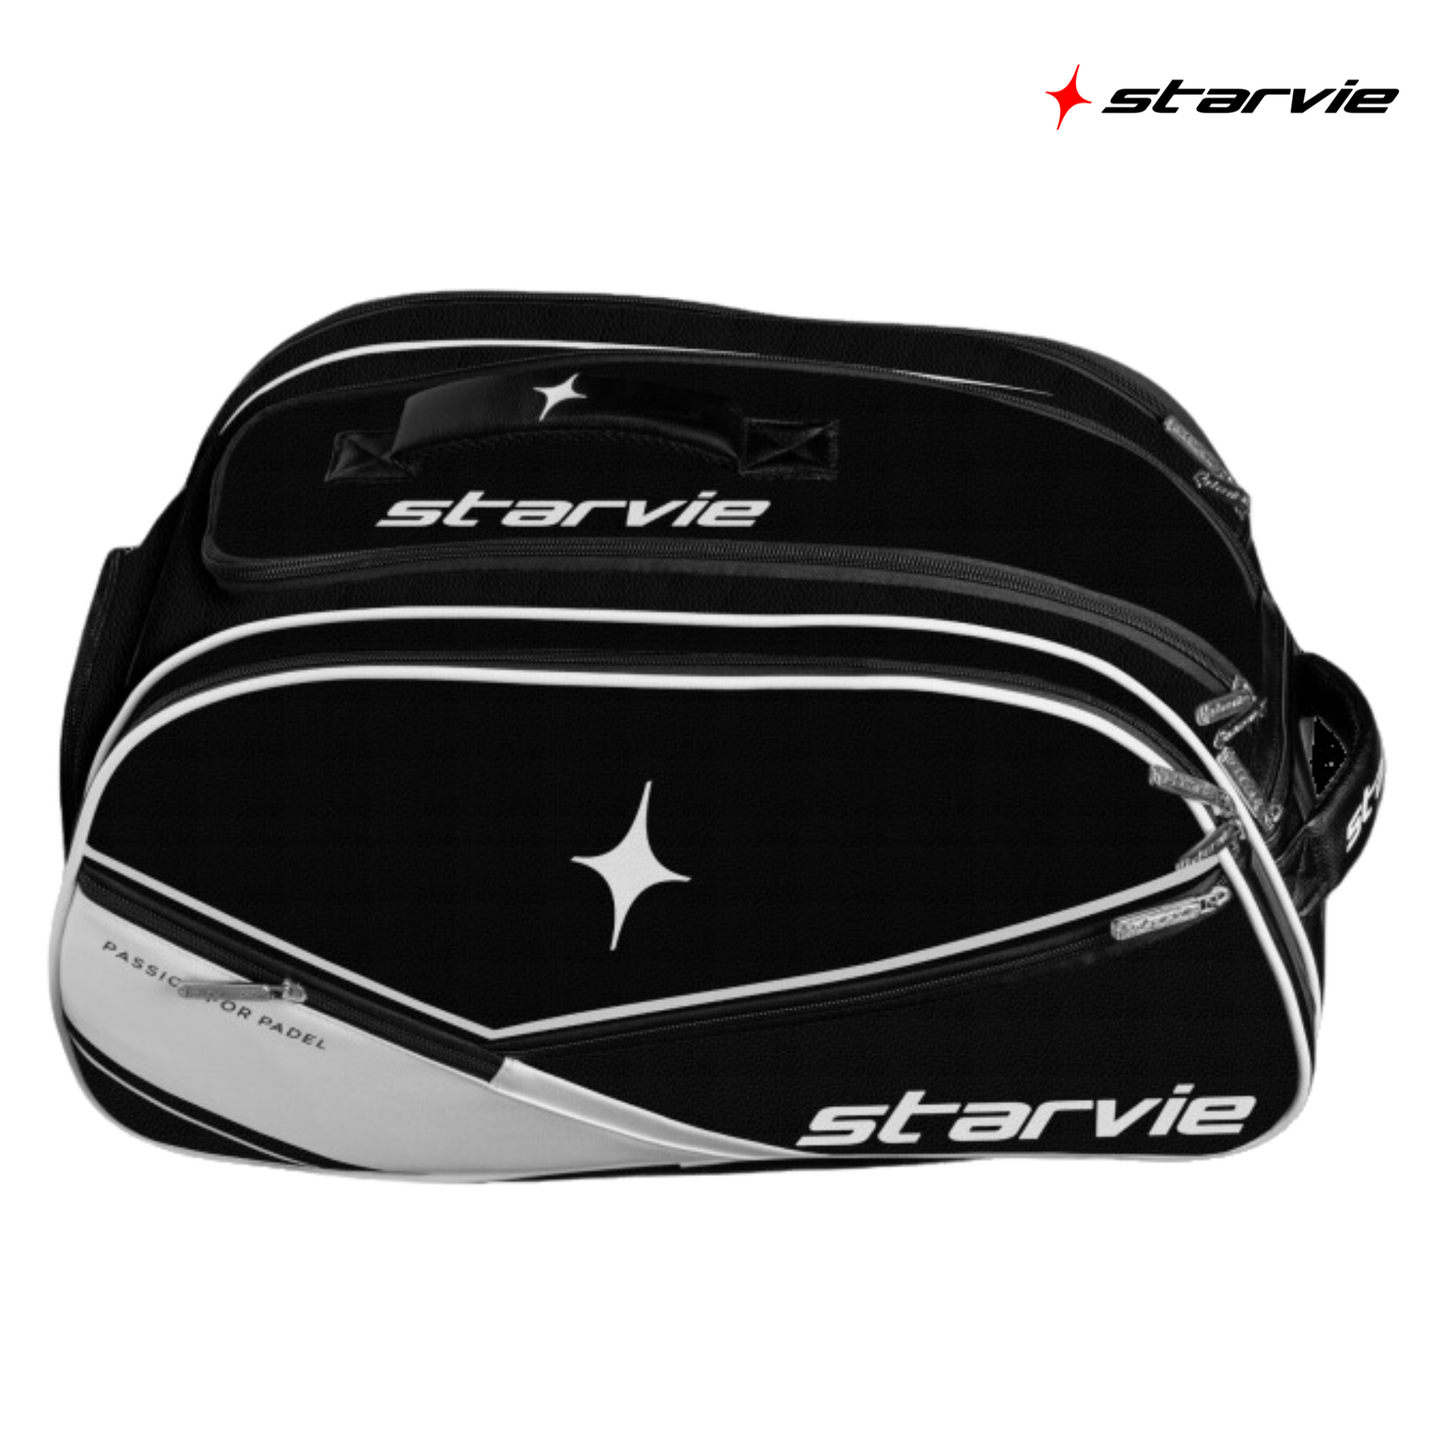 Starvie Pádel Elite | Padel Bag Bags Starvie   